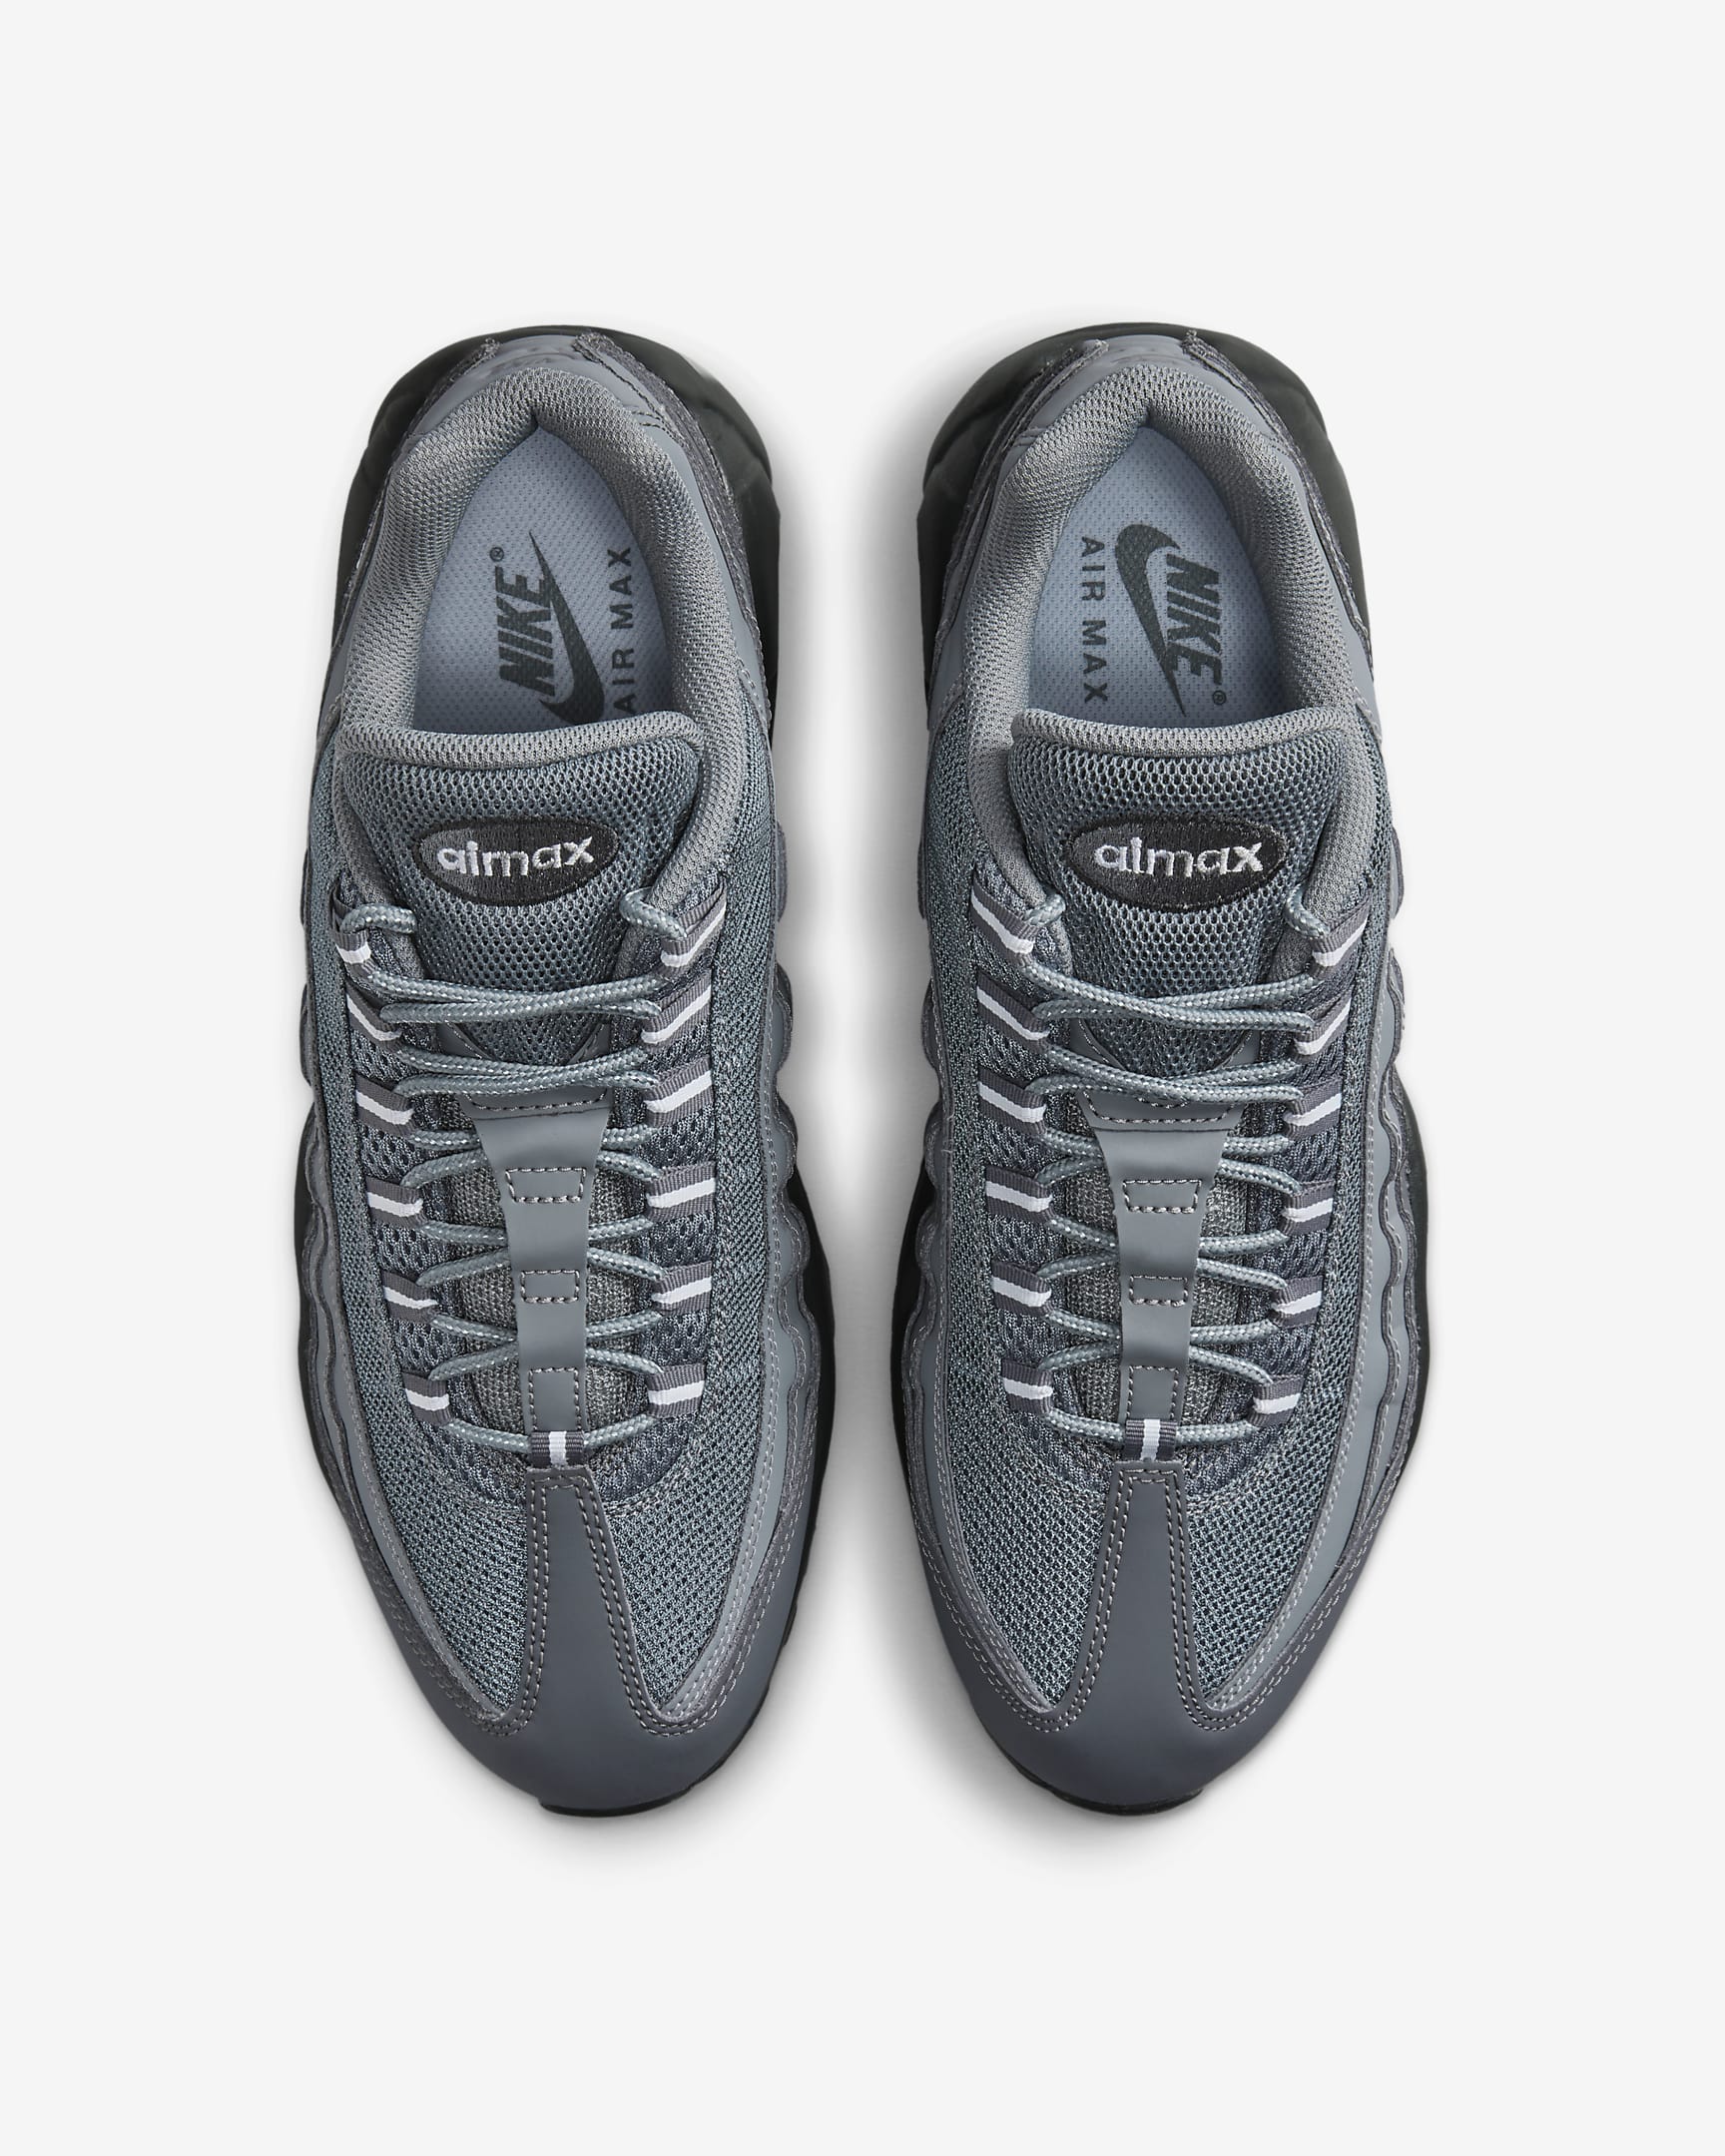 Nike Air Max 95 herenschoenen - Dark Grey/Anthracite/Cool Grey/Wit